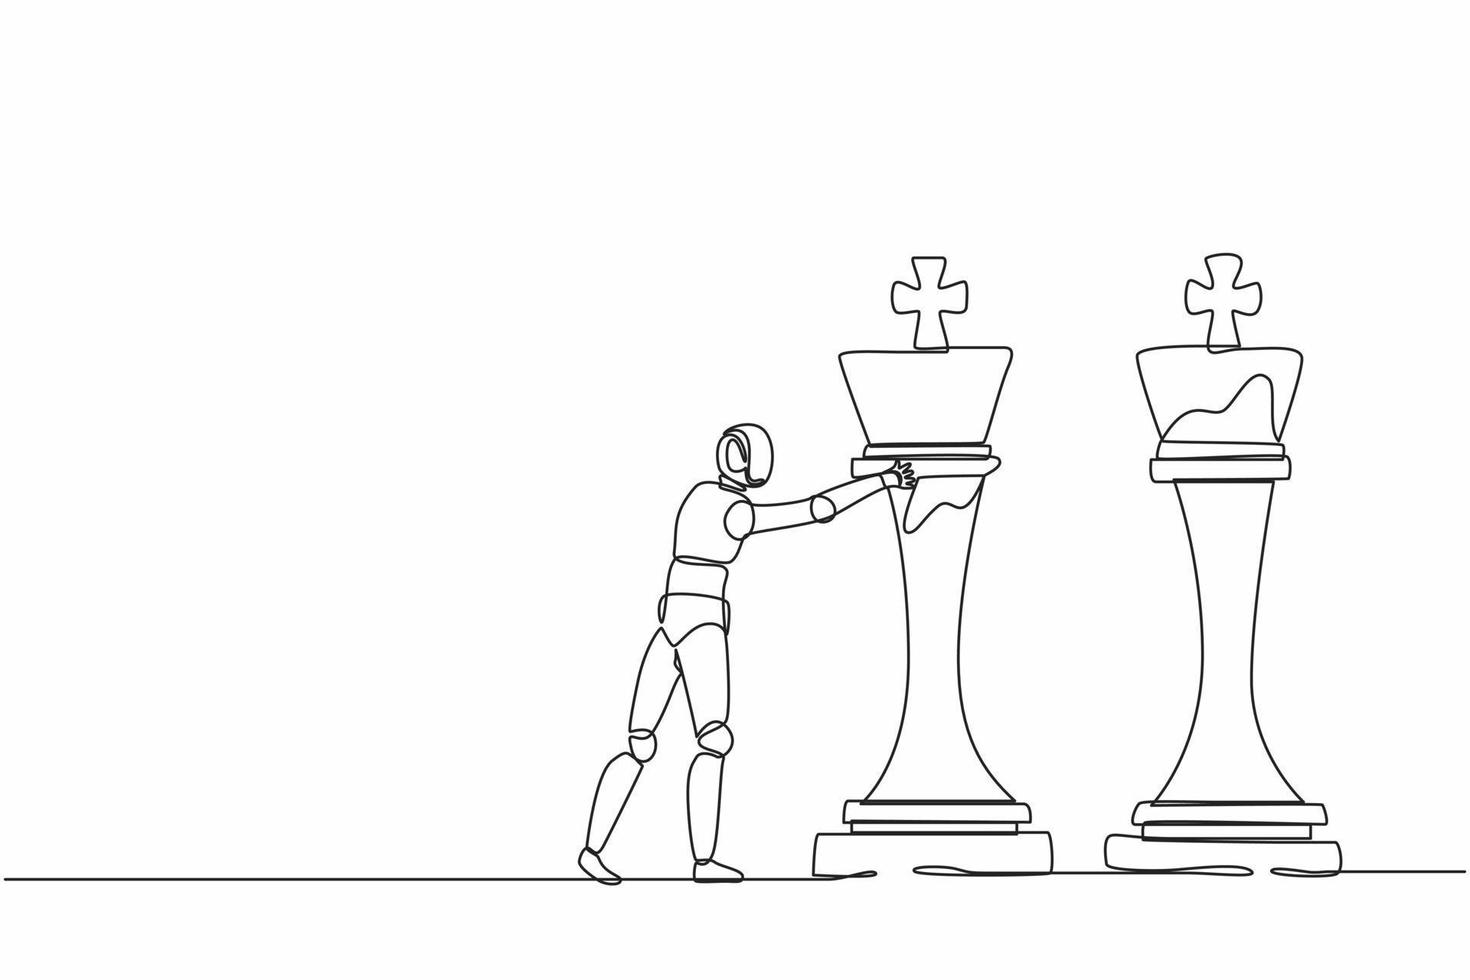 un seul robot de dessin à une ligne pousse une énorme pièce d'échecs du roi pour abattre l'autre roi. technologie future. processus d'apprentissage automatique de l'intelligence artificielle. vecteur graphique de conception de dessin en ligne continue